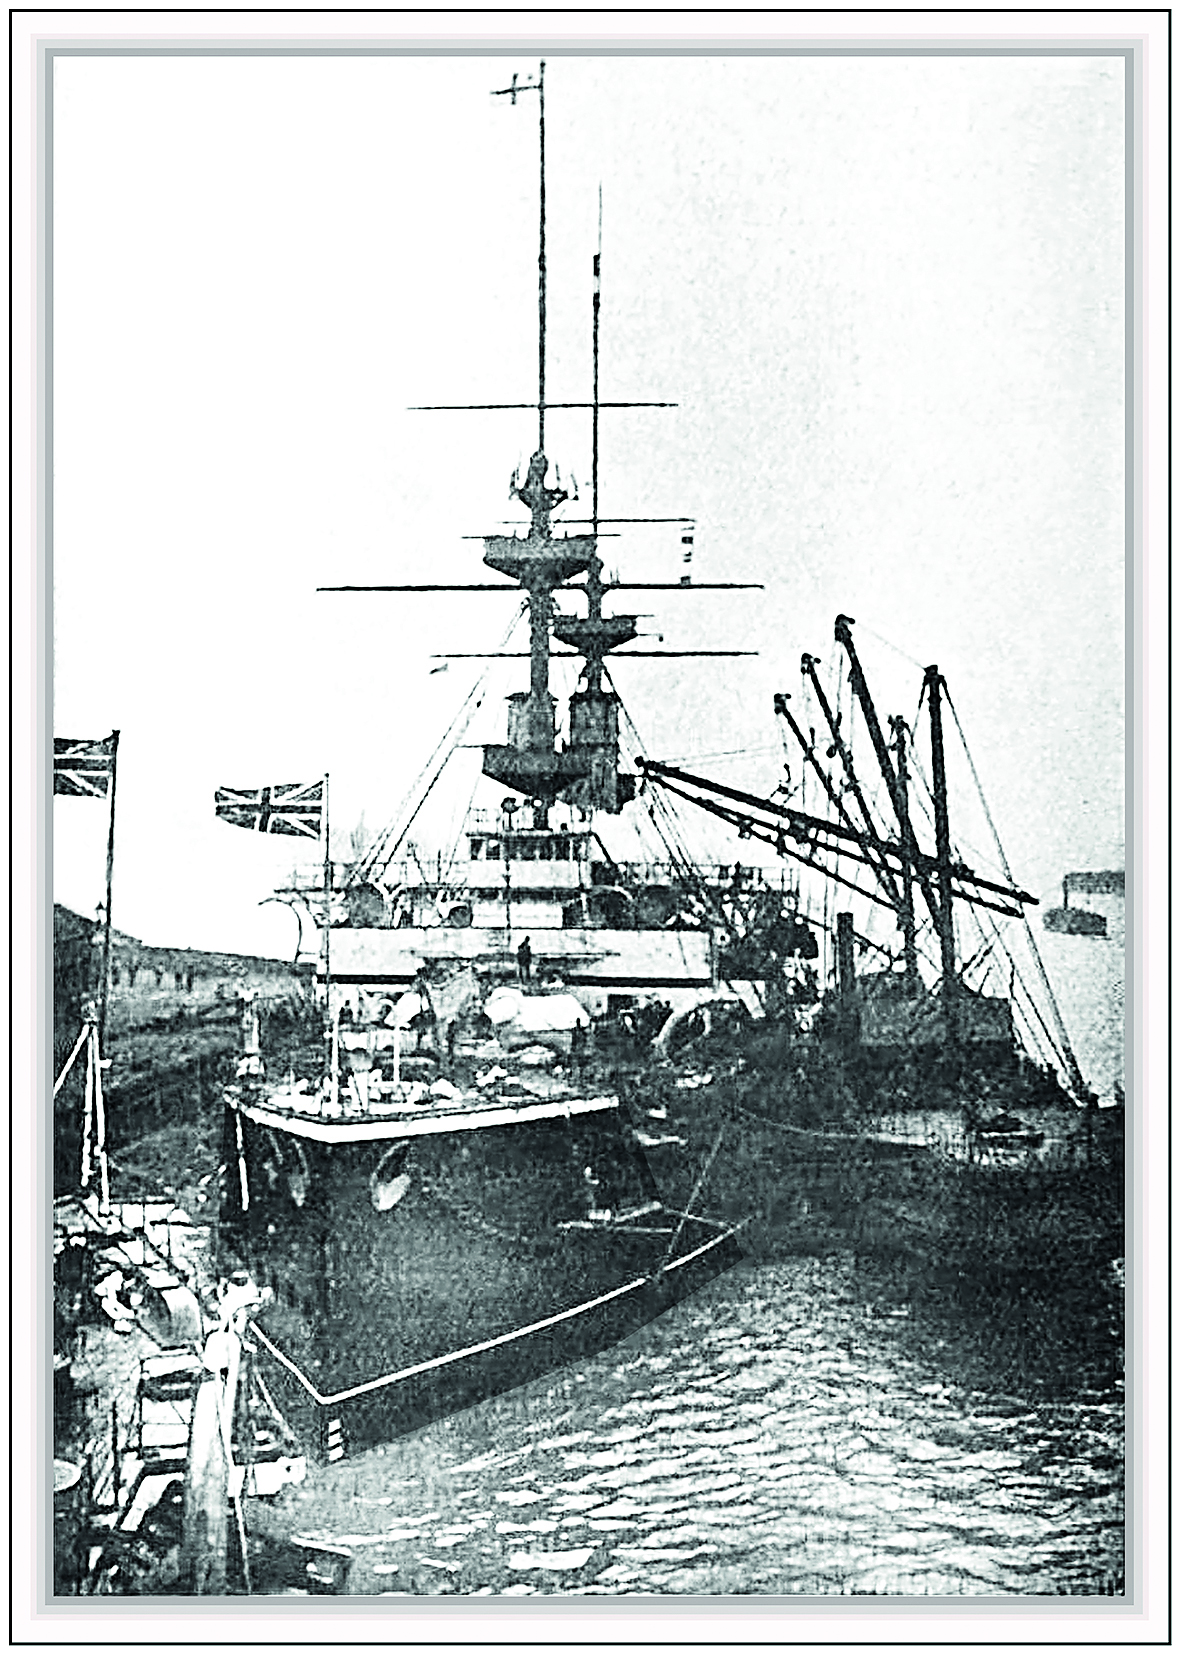 De Britse kruiser H.M.S. Majestic wordt hier geladen door vier speciale door Temperley gepatenteerde kolenbunkerschepen, die 'colliers' werden genoemd.